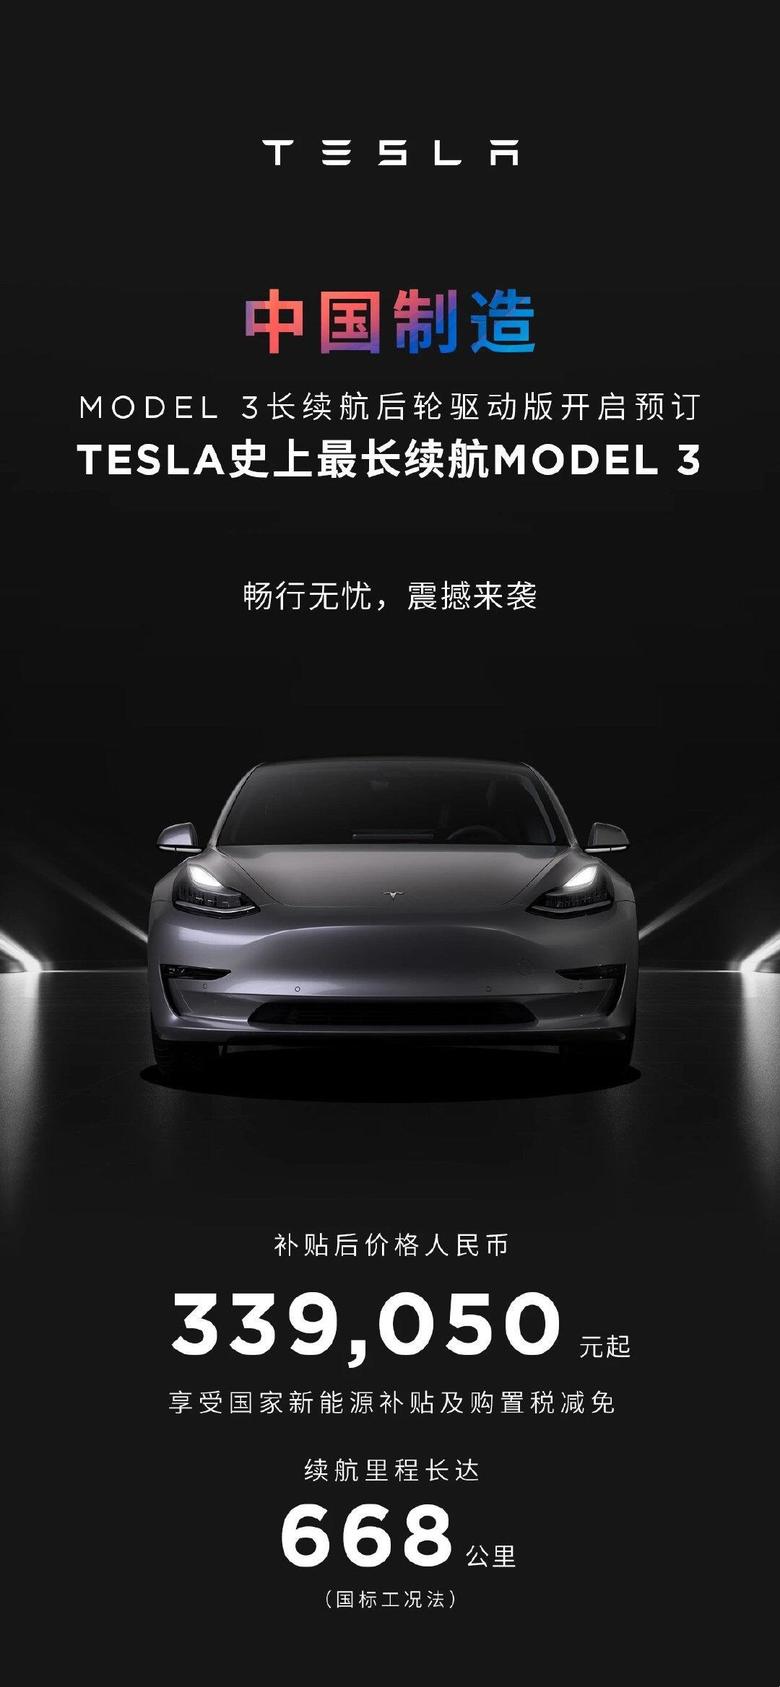 model 3 中国制造的长续航特斯拉Model3终于还是来了，大家觉得这个价格怎么样？(来源:特斯拉)​​​